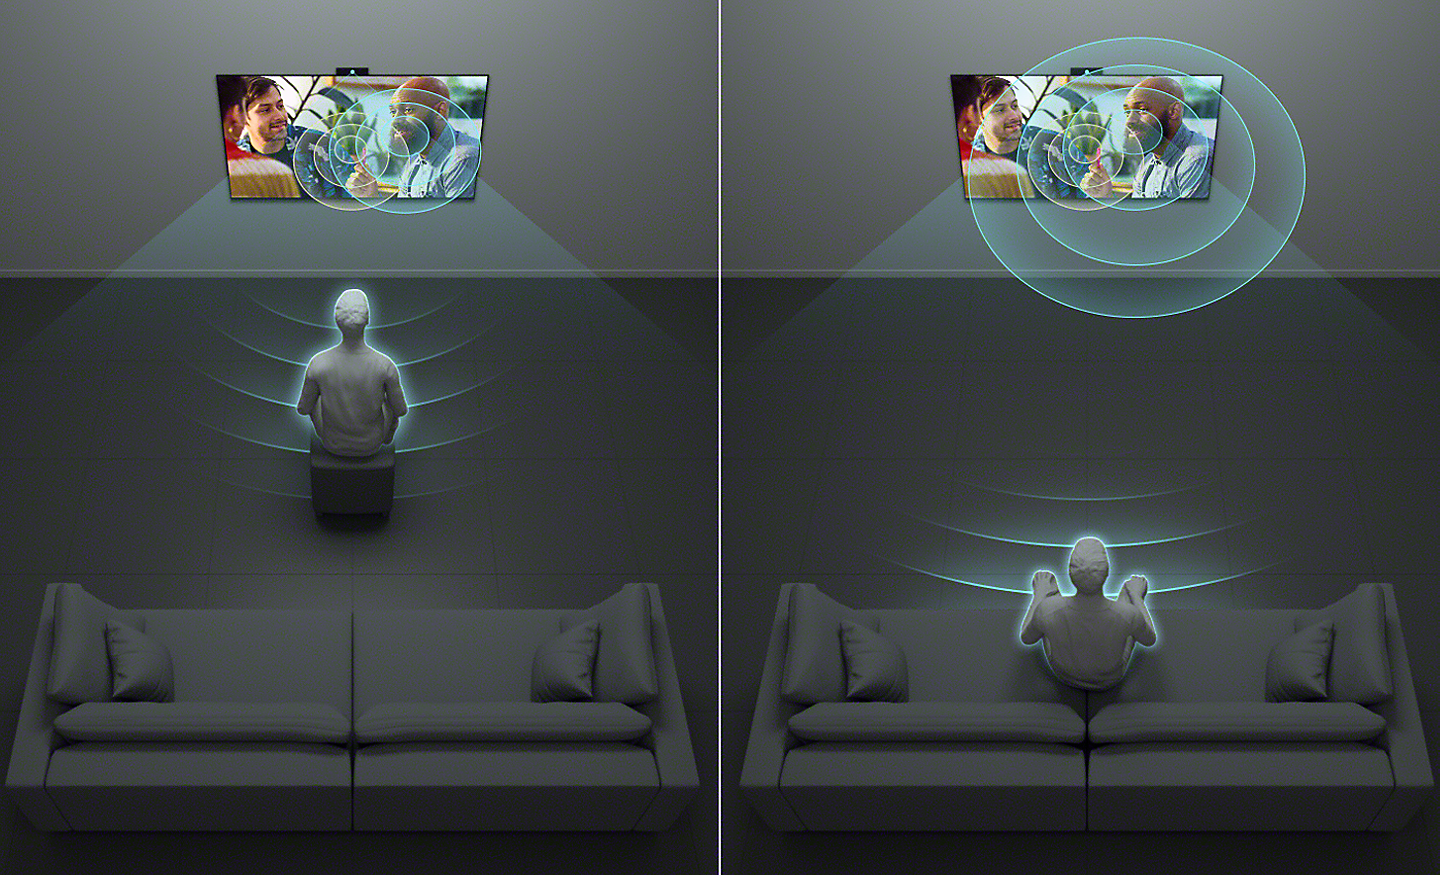 Pantalla dividida de una imagen que muestra a una persona viendo la televisión desde distintas posiciones: sentada cerca y sentada más lejos